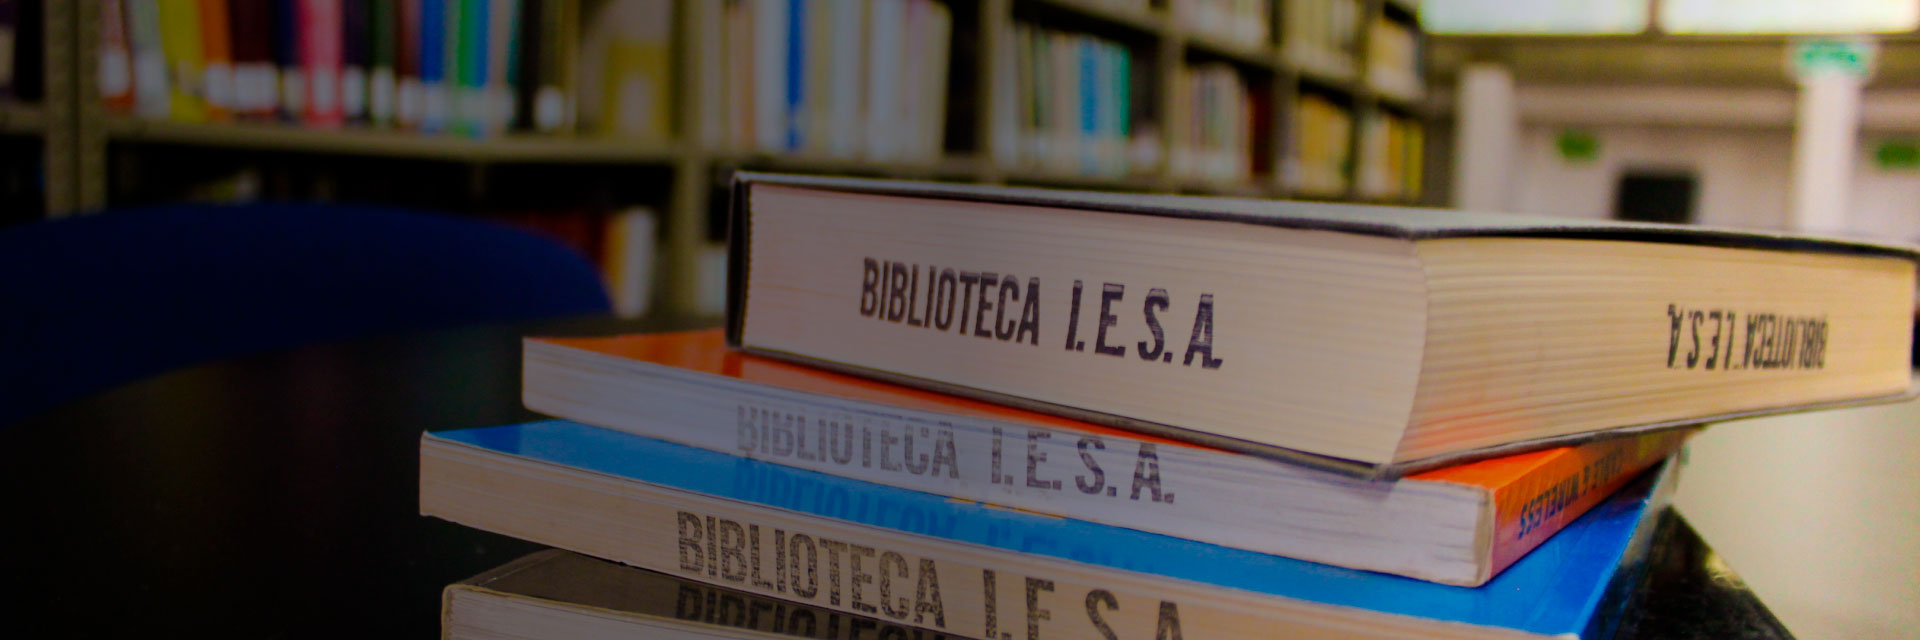 Biblioteca IESA